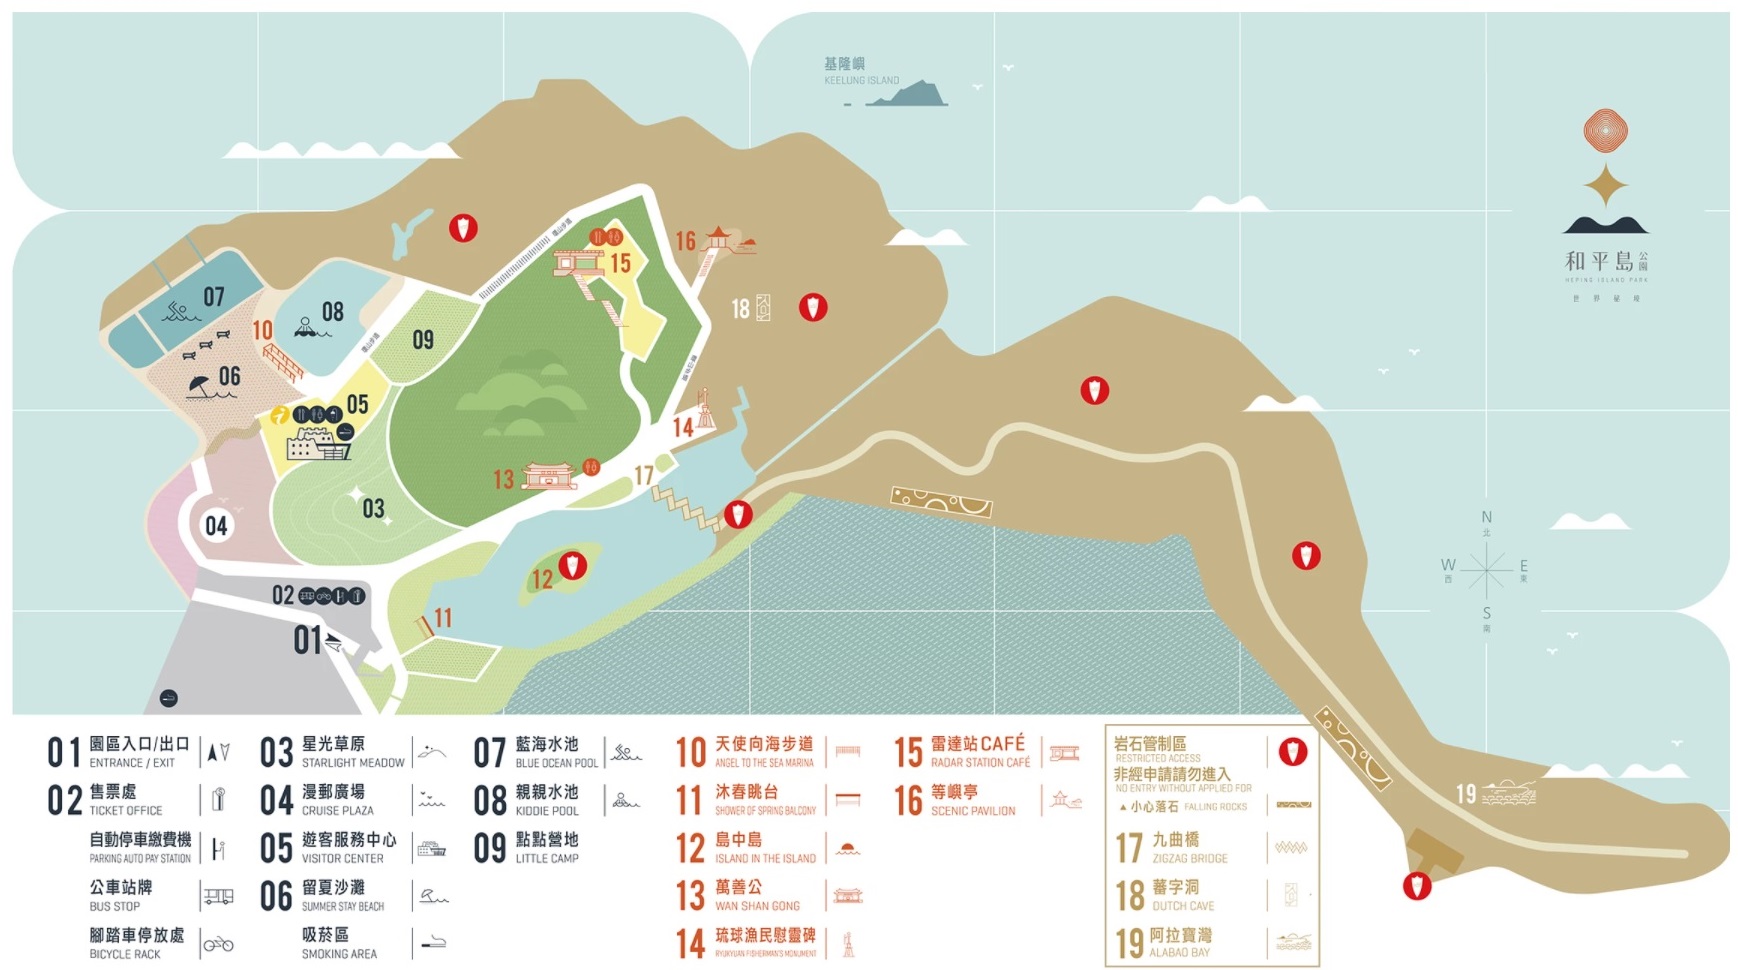 和平島公園 園區地圖